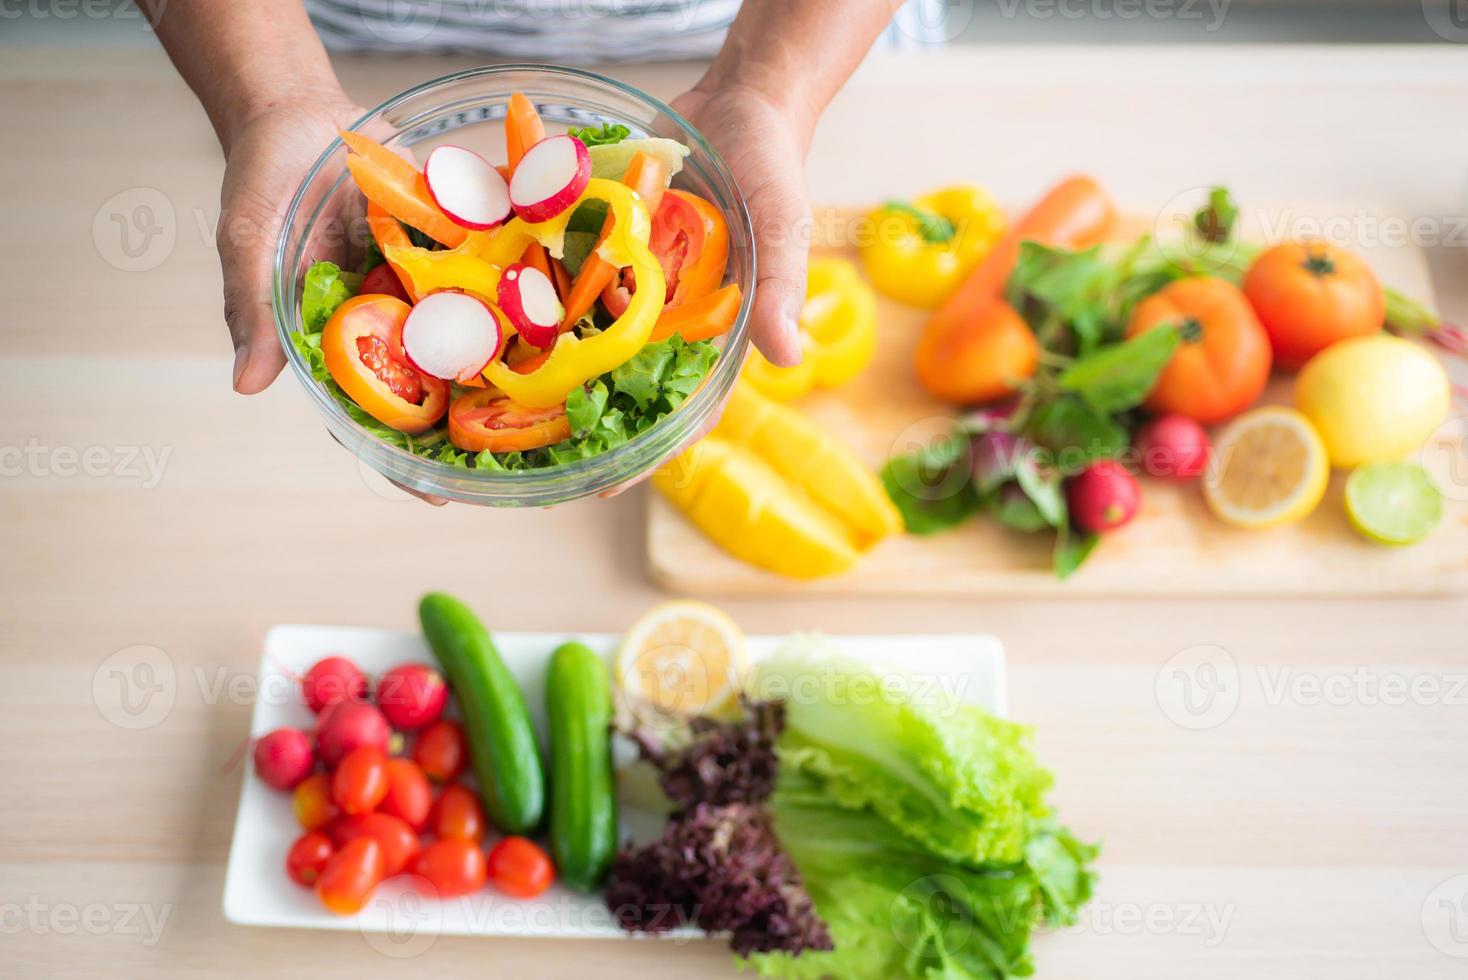 close-up vista superior de uma salada de legumes segurando na mão contra um fundo desfocado de legumes na mesa, como tomates, pepinos, carvalho verde, carvalho vermelho, limão na cozinha. foto